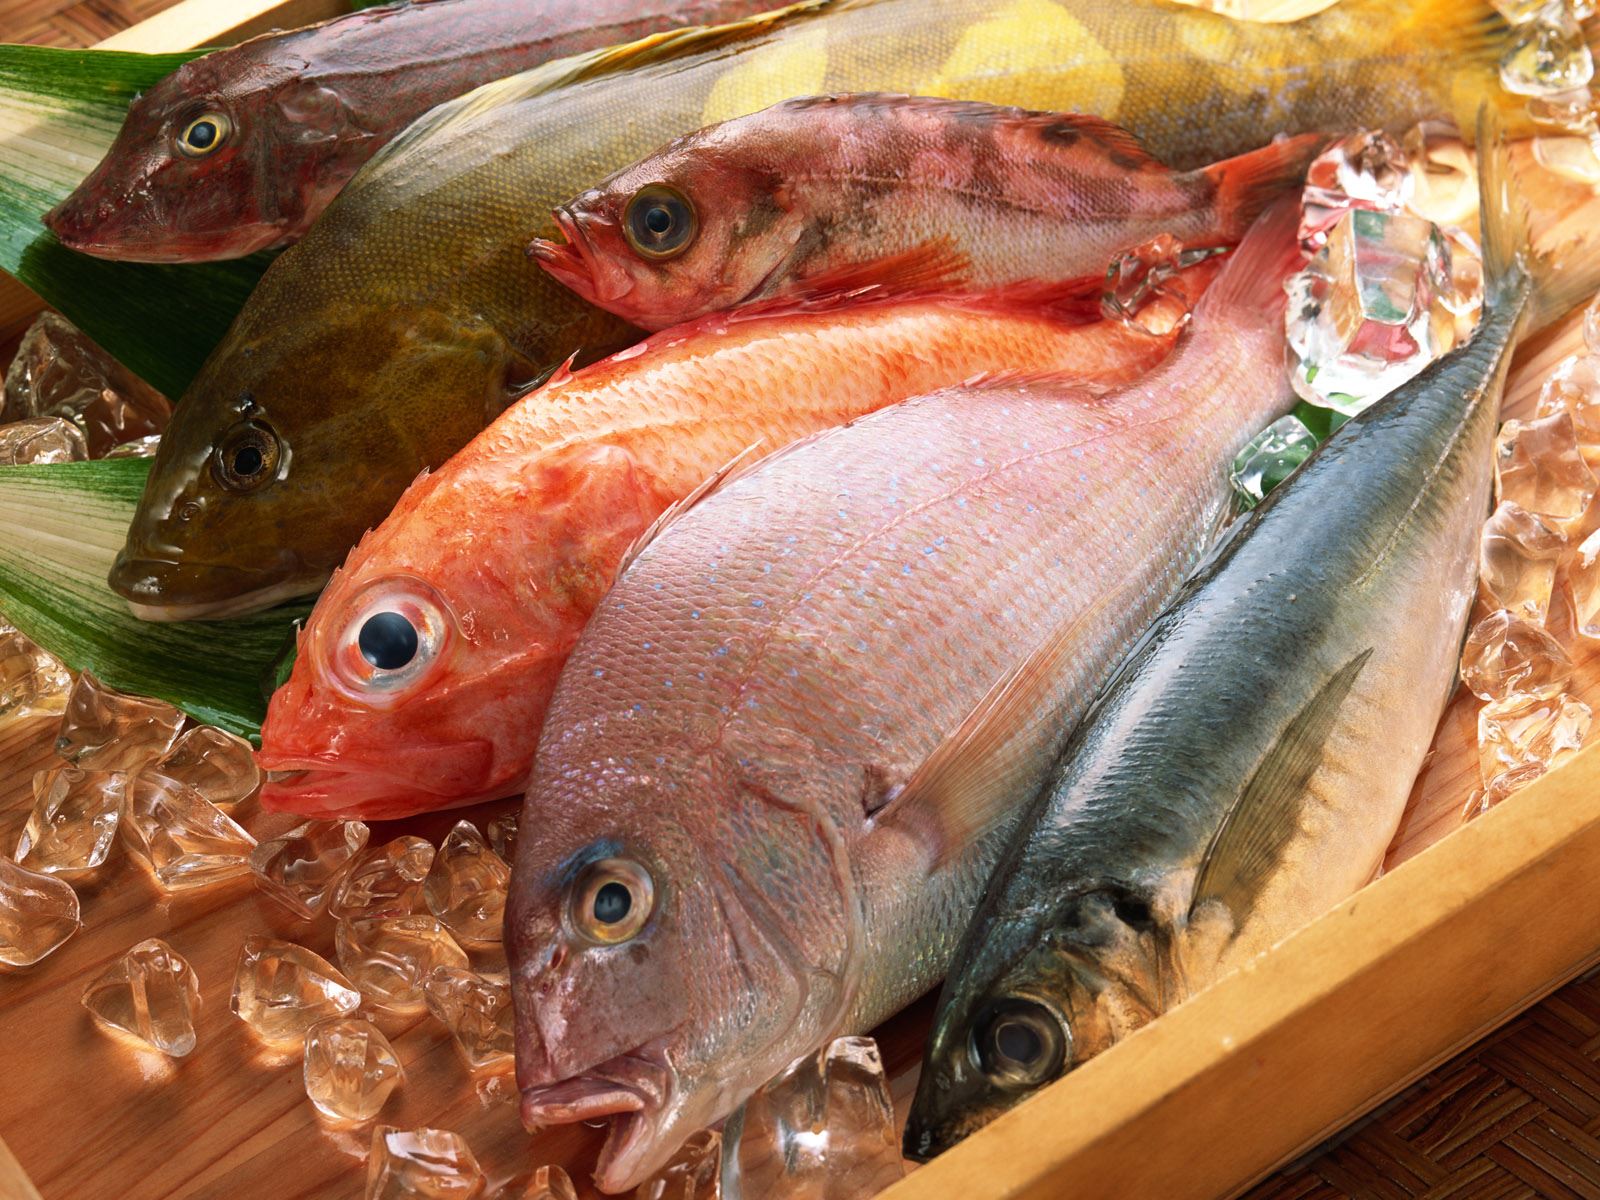 نسب الفيتامينات المختلفة الموجودة في الاسماك